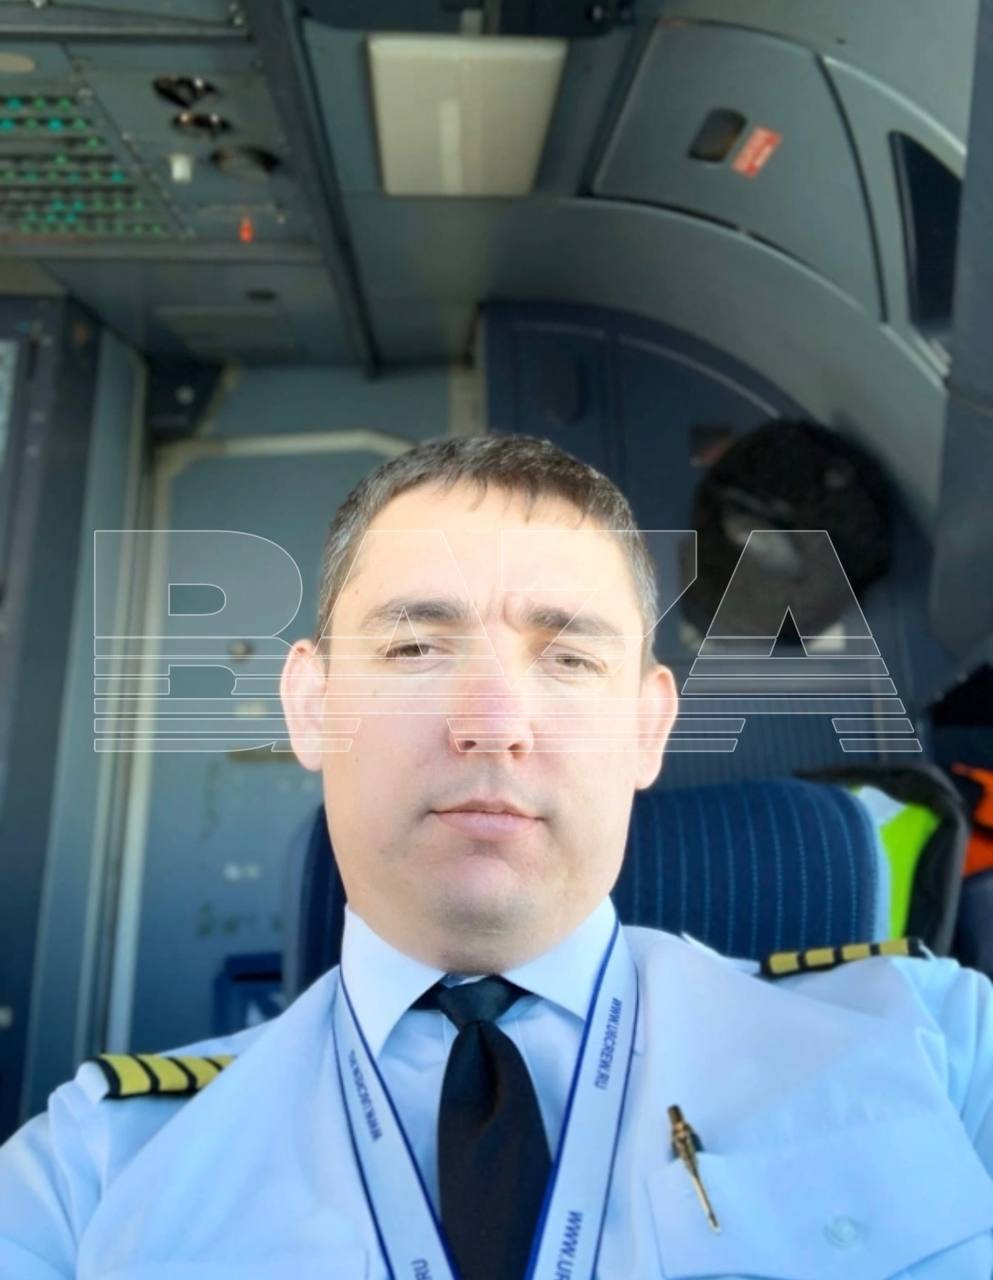 Капитан воздушного судна Сергей Белов 